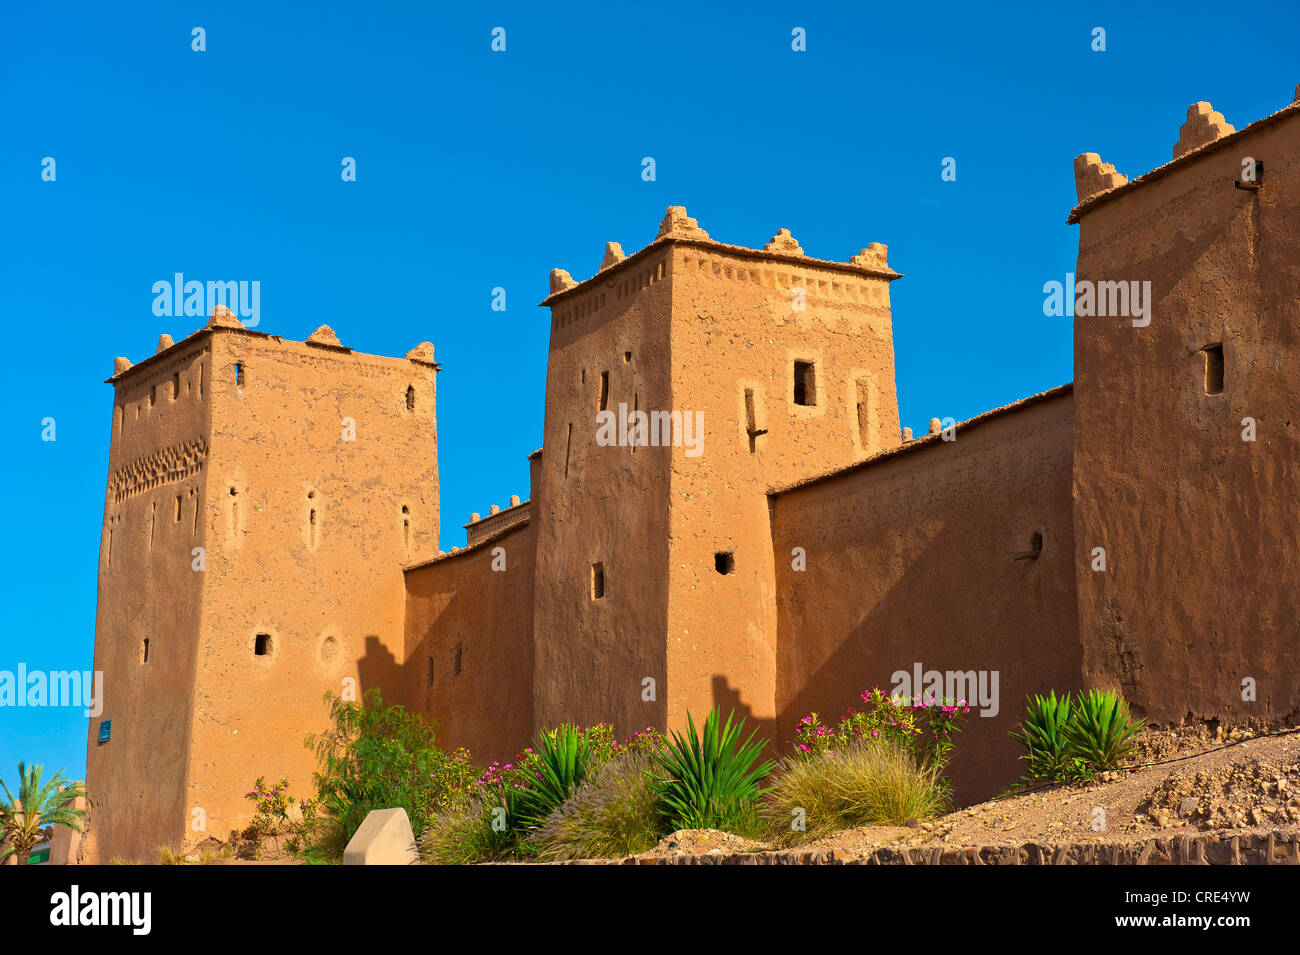 Tours et remparts de la forteresse de Taourirt, boue, résidentiel château berbère, Tighremt, Ouarzazate, dans le sud du Maroc, Maroc Banque D'Images